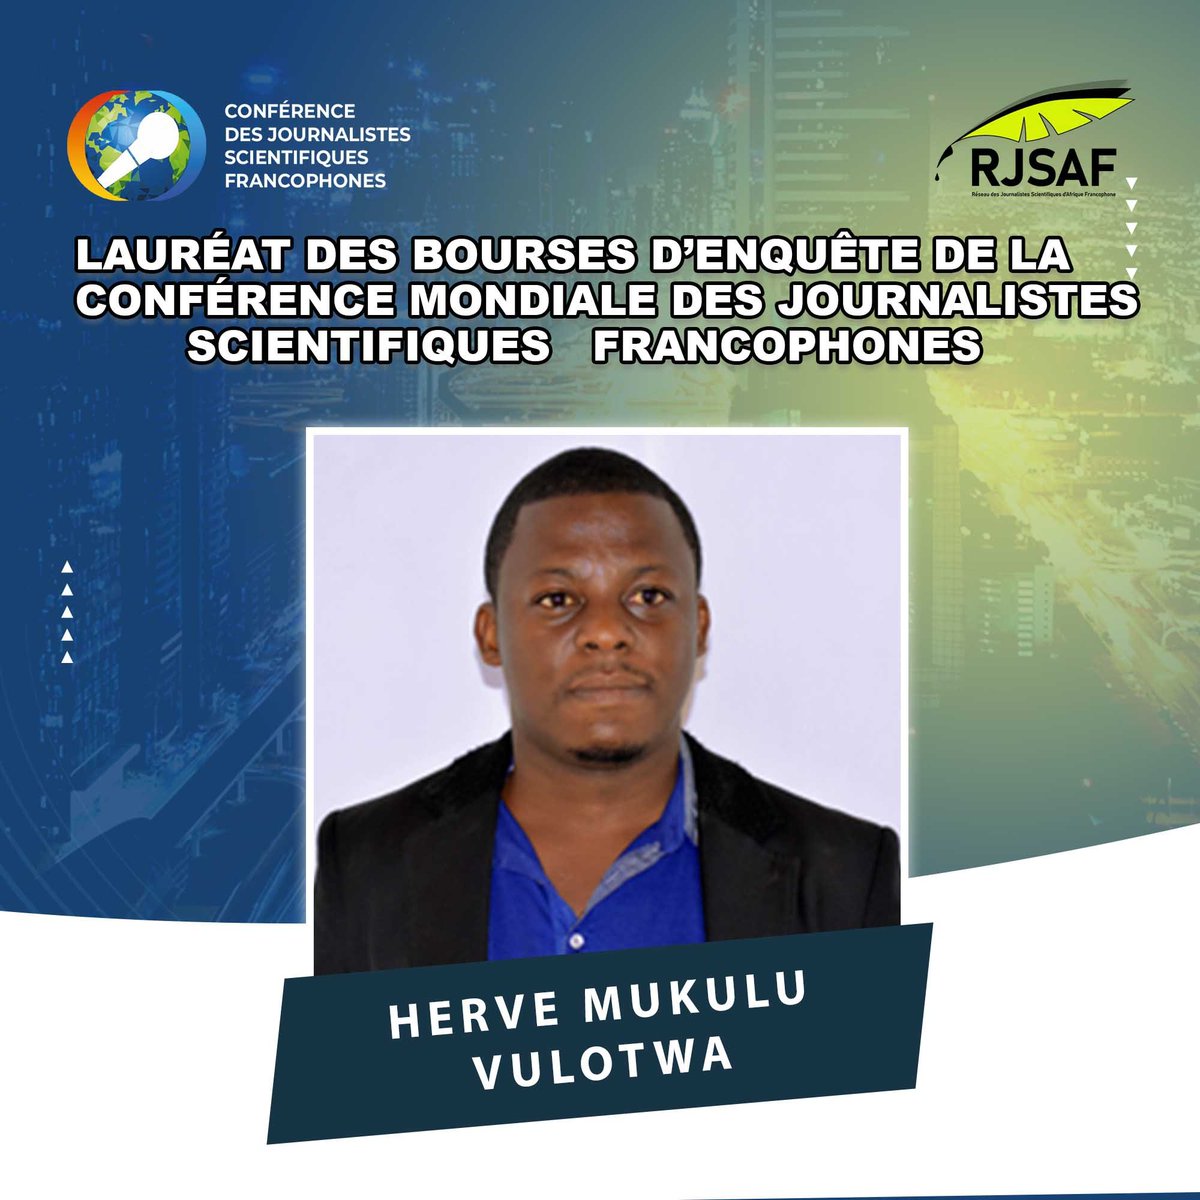 Journaliste-reporter staff à Lavoixdelucg et éditeur de Greenafia, Mukulu Vulotwa Hervé est spécialisé dans le journalisme environnemental depuis une dizaine d'années. Son travail a été couronné par 3 prix journalistiques. Il est l'un des lauréats de notre bourse d'enquête.